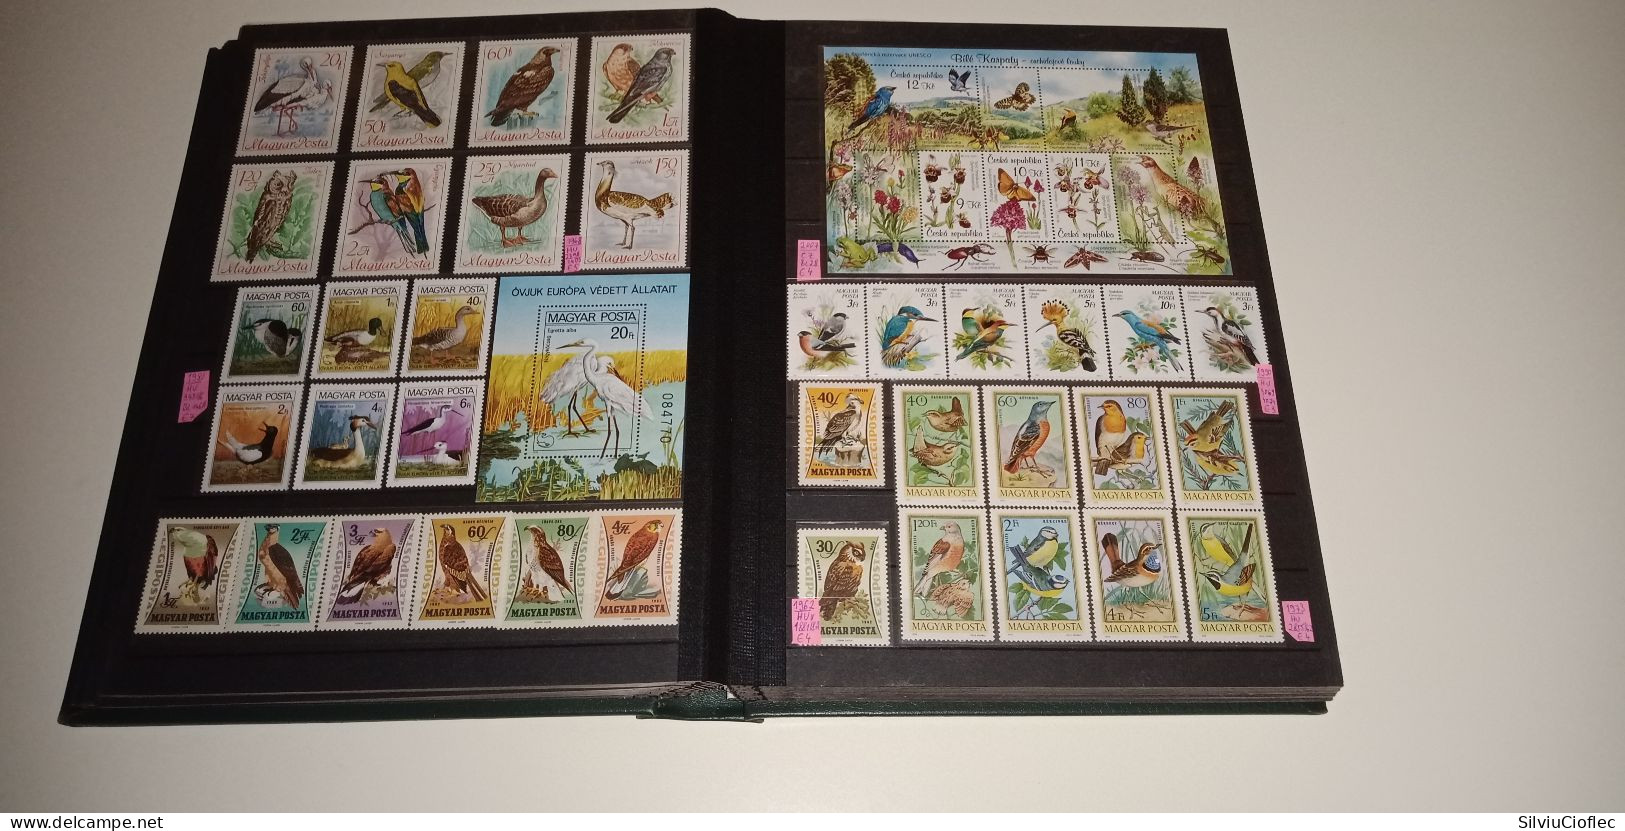 Birds Superb Stamp Collection,MNH(please read description)including 2 Leuchtturm PREMIUM album with slipcase A4 64 pages